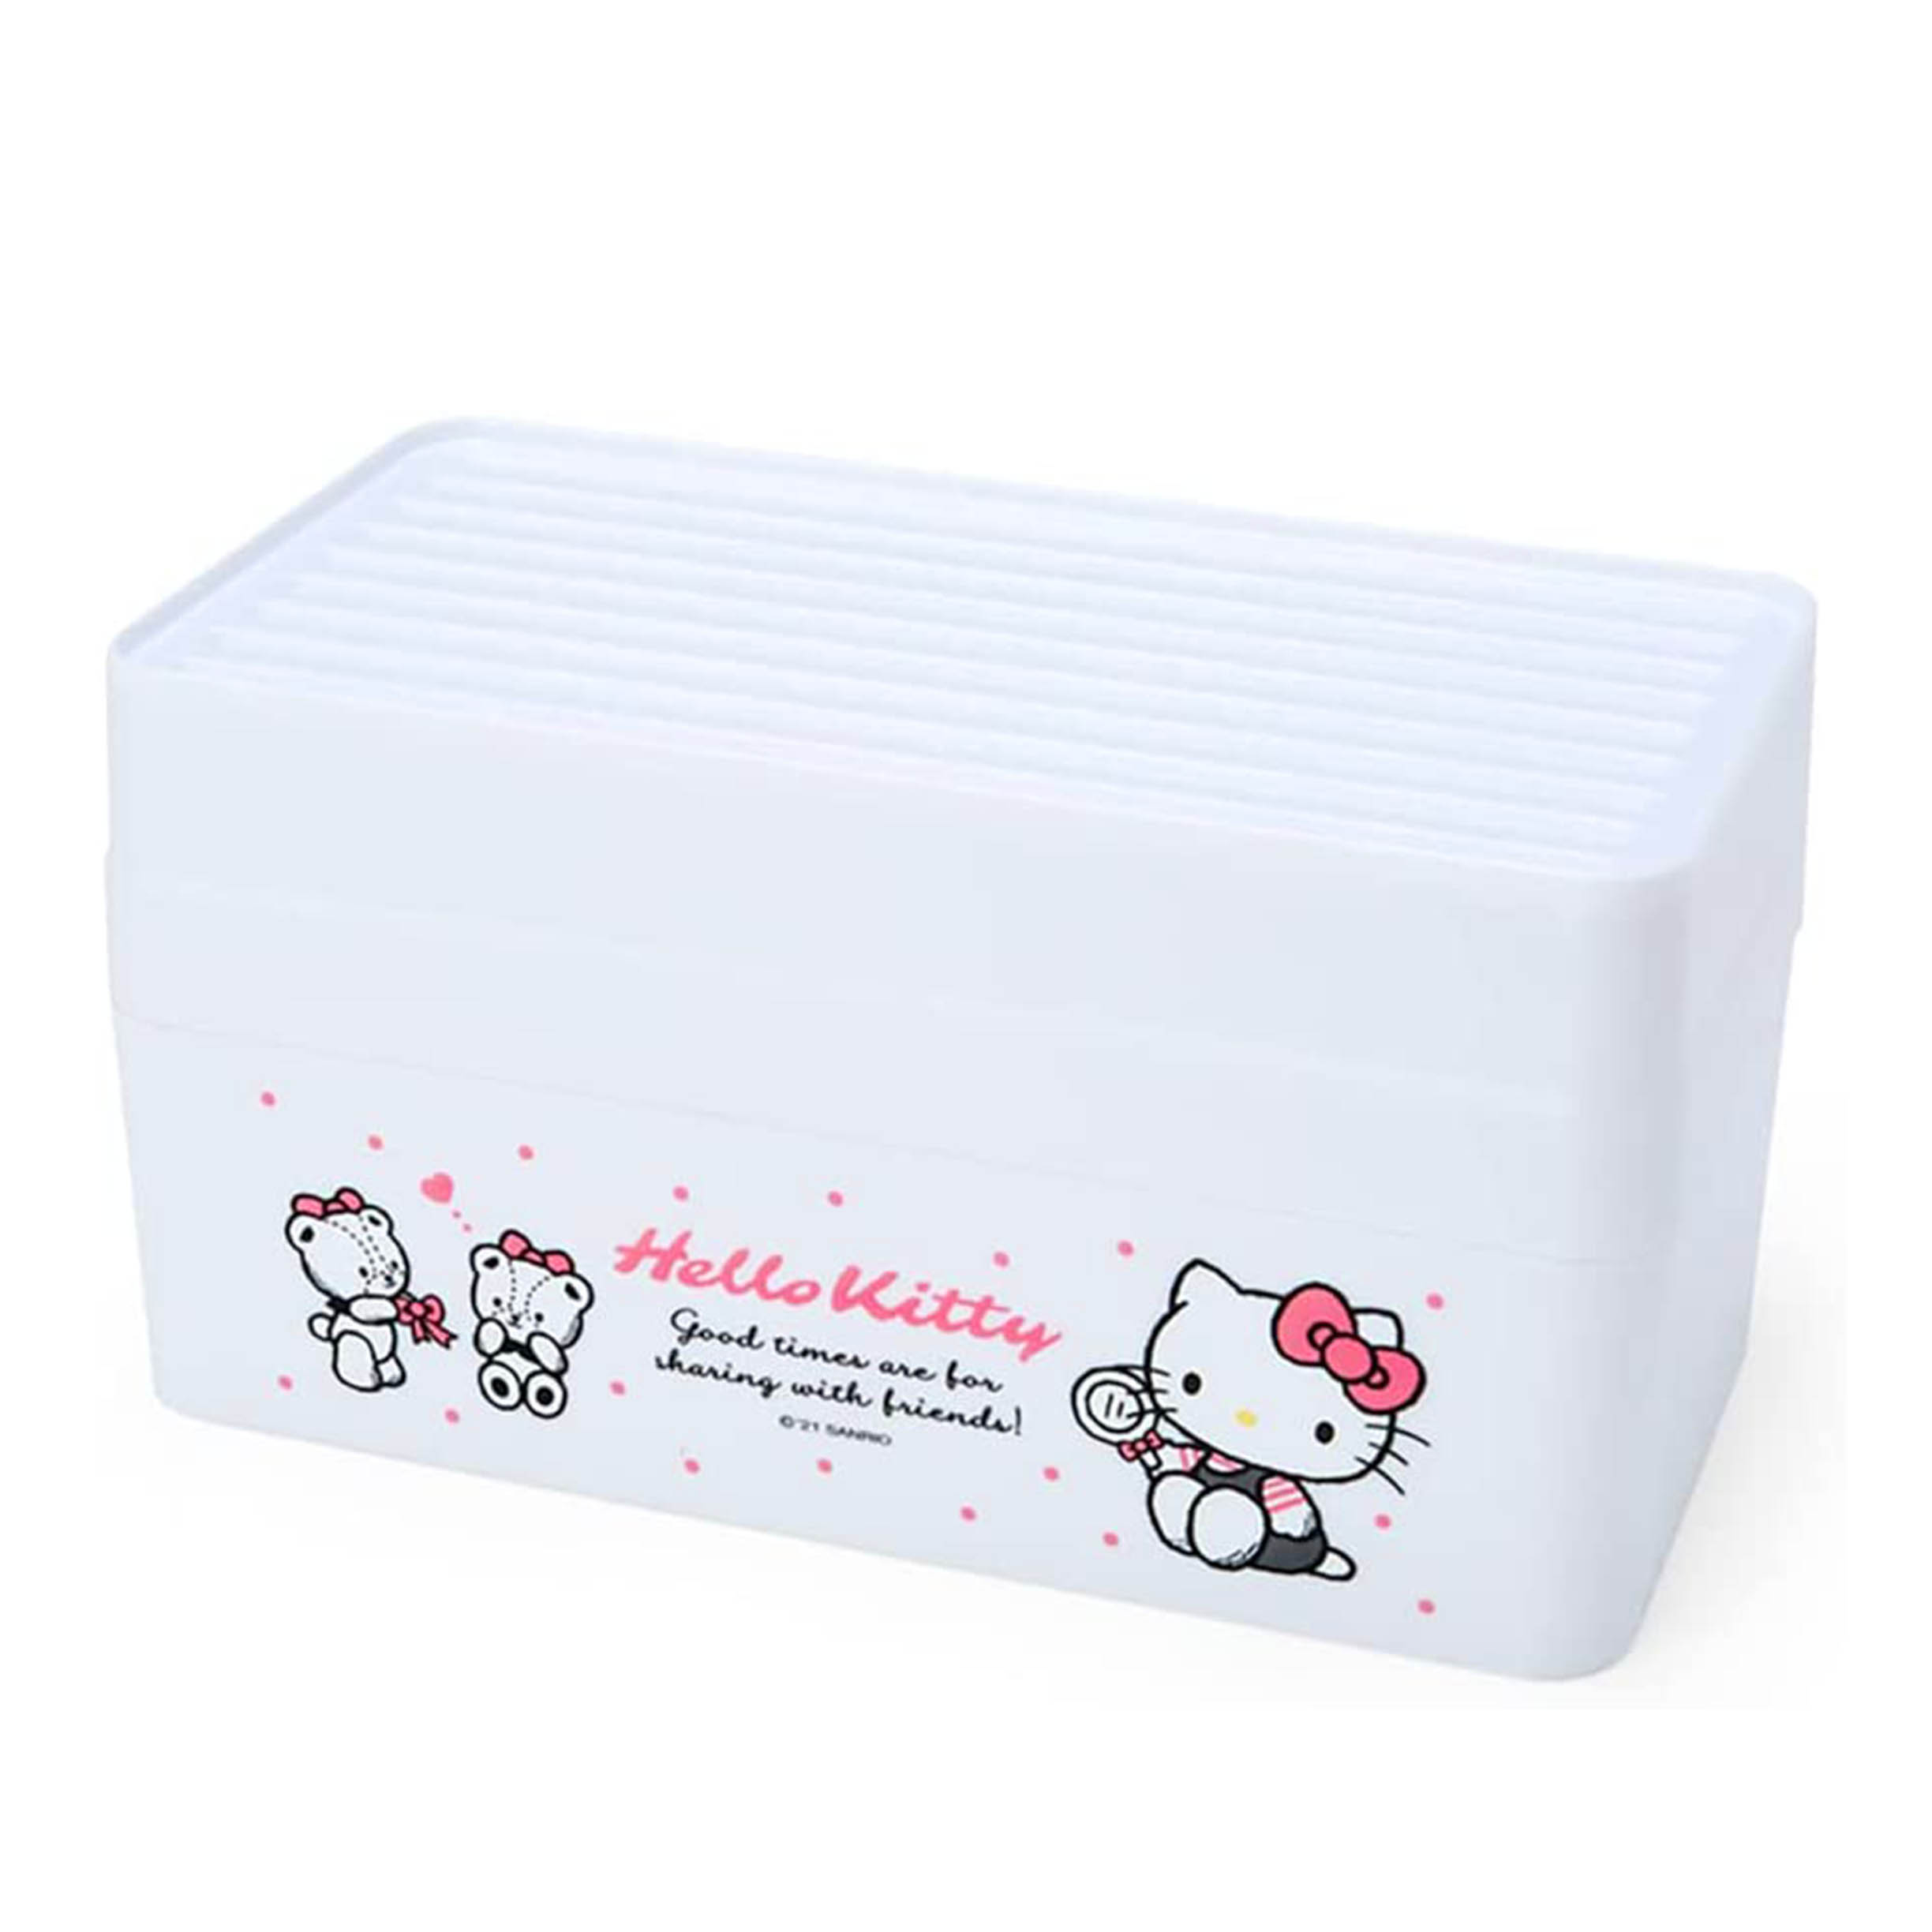 掛牆式口罩盒-凱蒂貓 HELLO KITTY 三麗鷗 Sanrio Orininal 日本進口正版授權